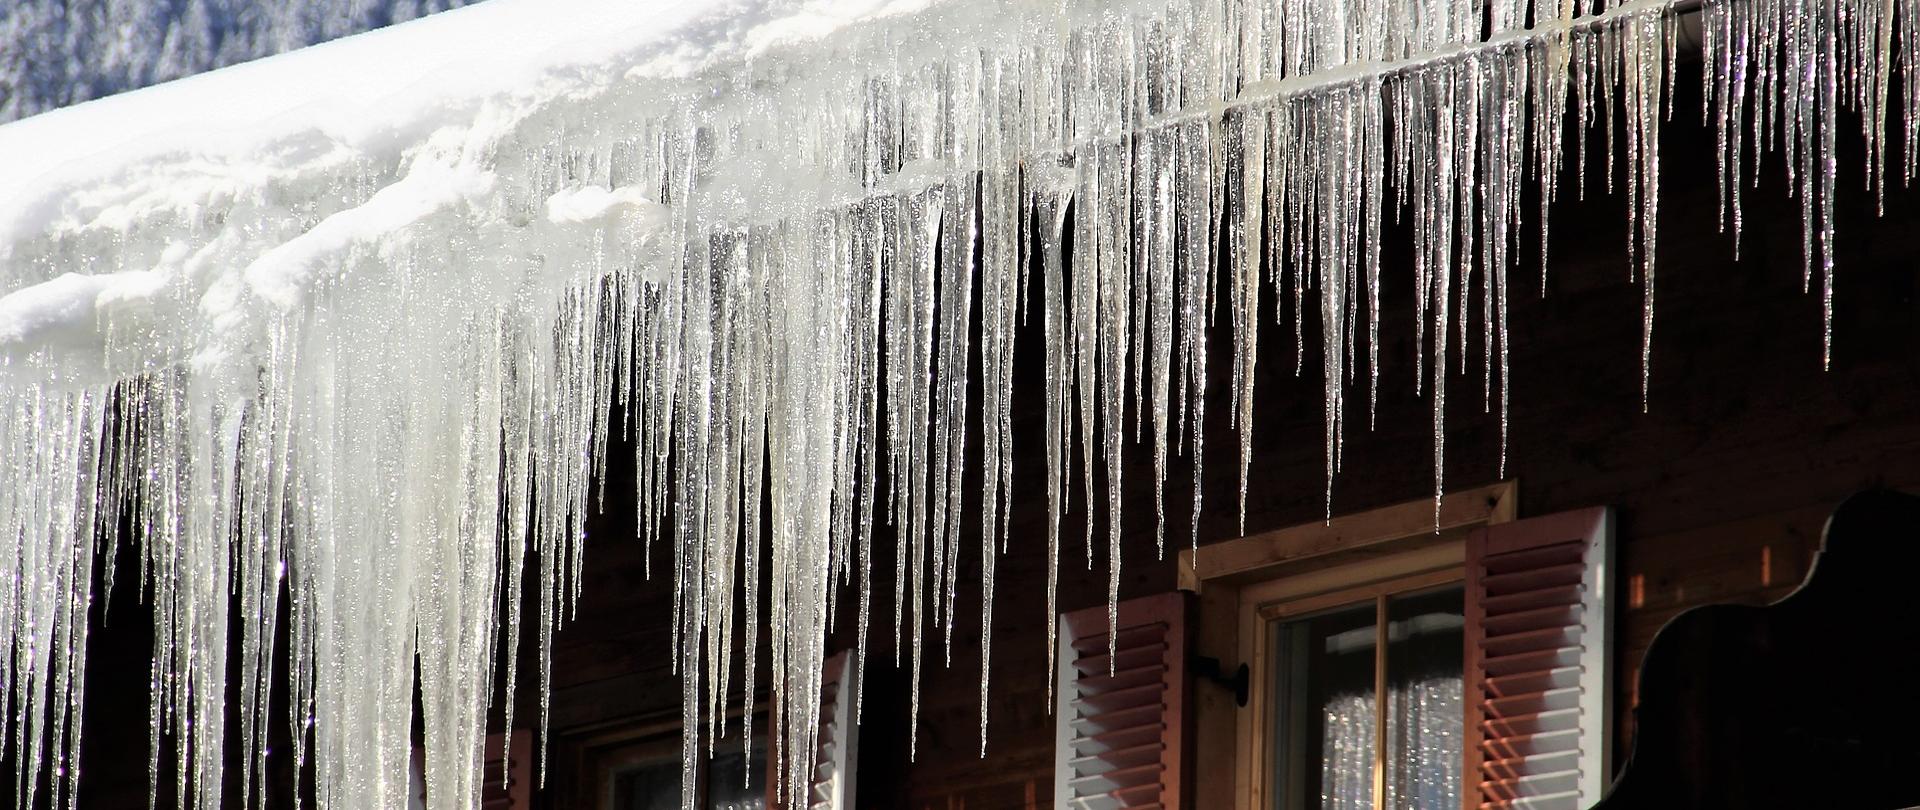 Zdjęcie przedstawia wiszące sople lodu na dachu drewnianego budynku